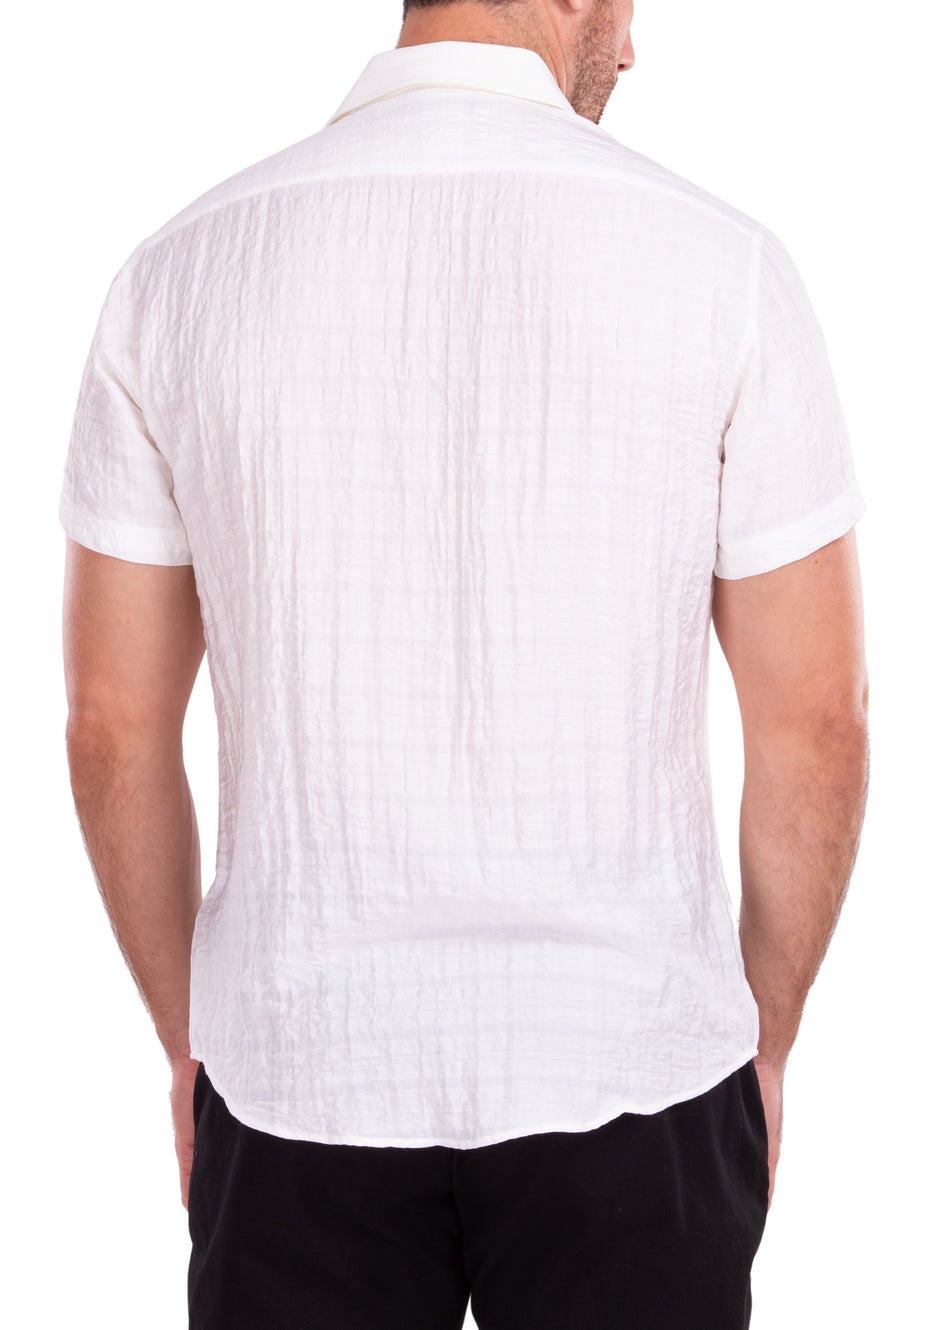 202173 - White Button Up Short Sleeve Dress Shirt